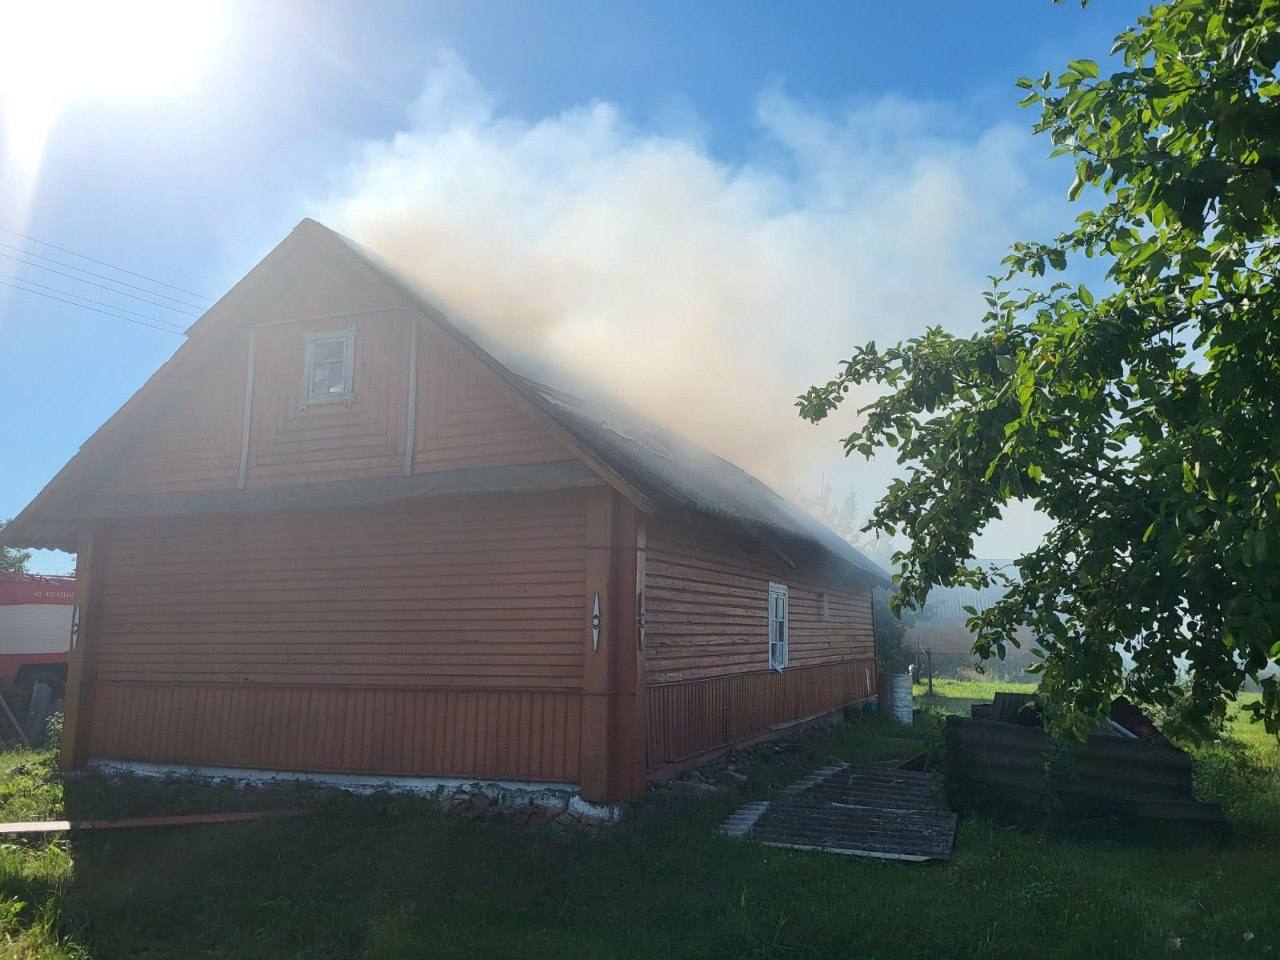 Жилой дом горел вчера в Лидском районе